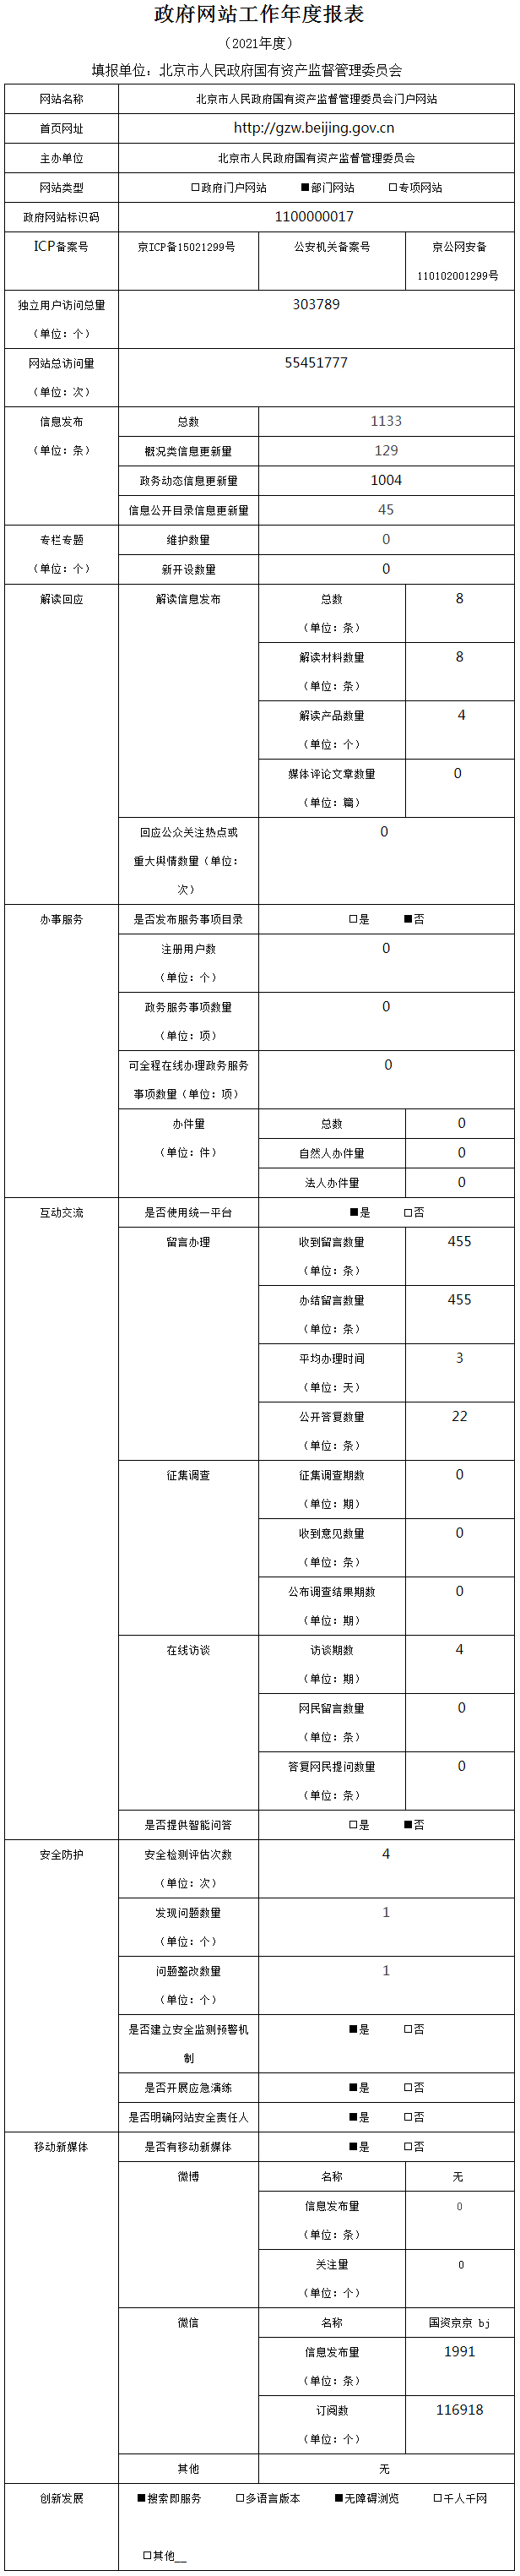 北京市人民政府国有资产监督管理委员会2021年政府网站年度工作报表